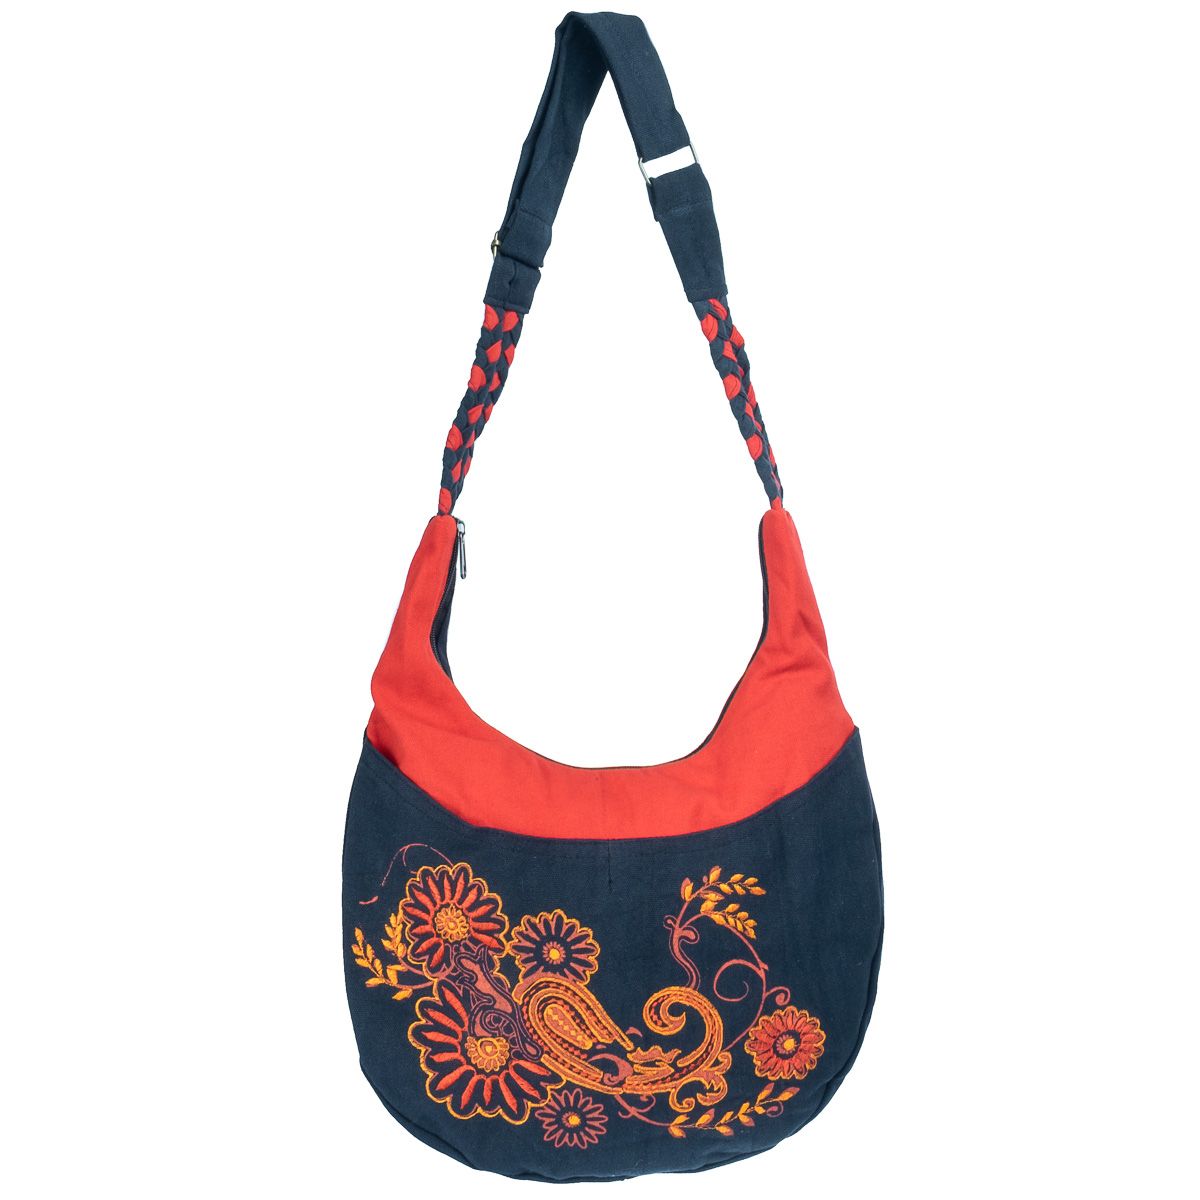 Oriental handbag with flowers Bunga Darah Nepal